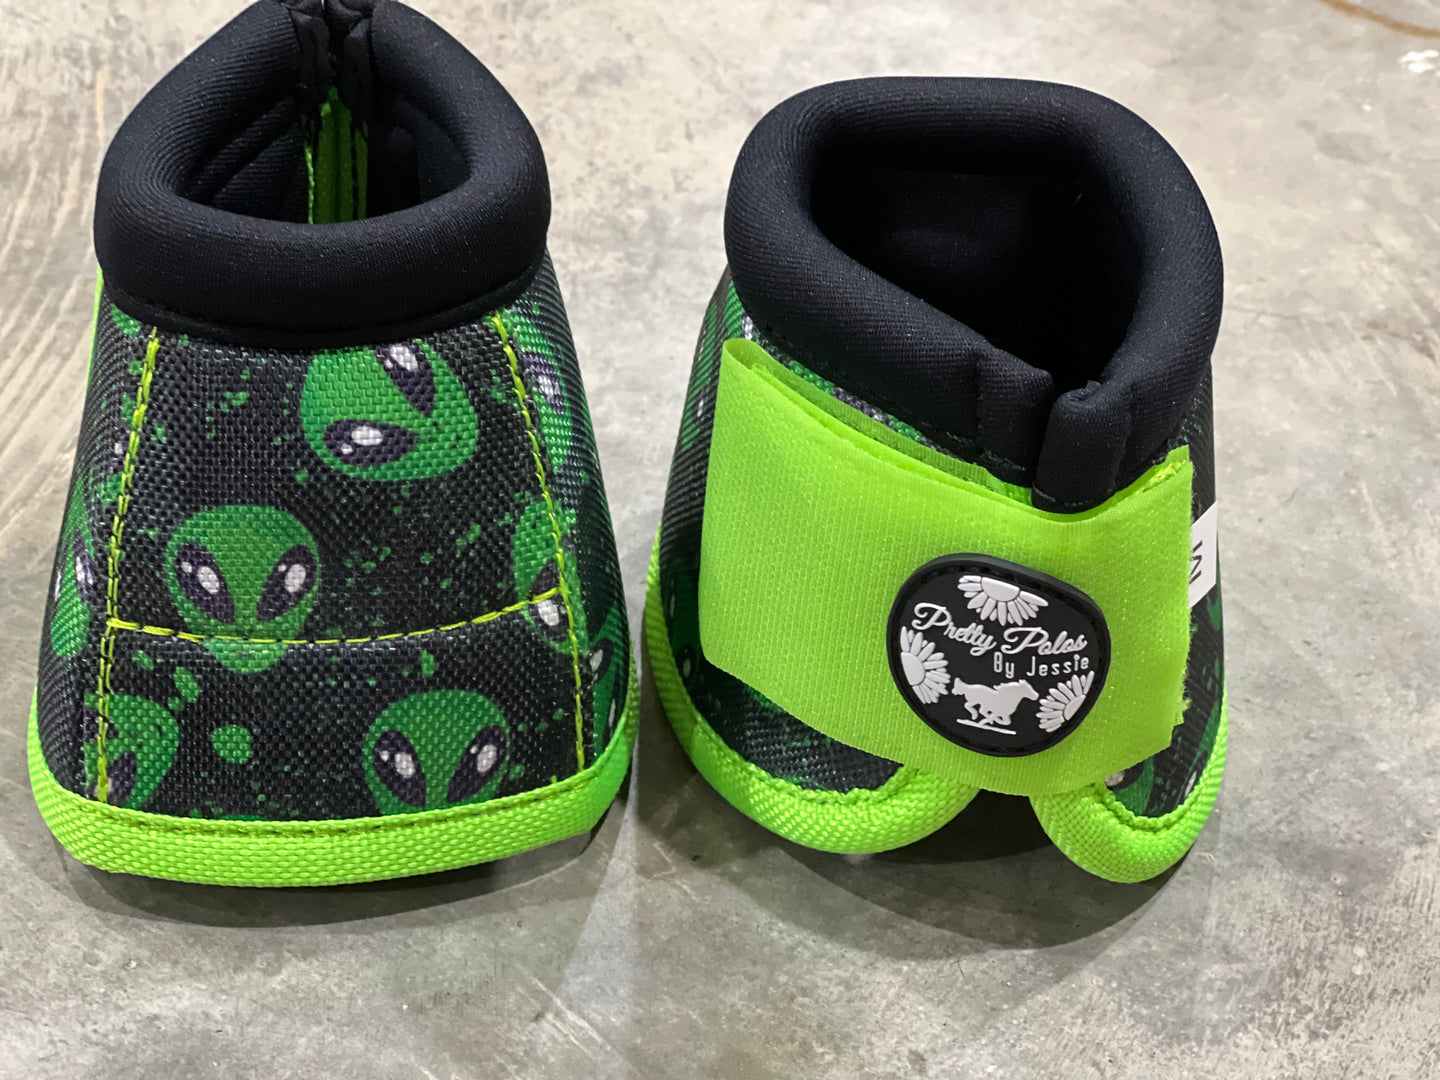 Alien Bell Boots